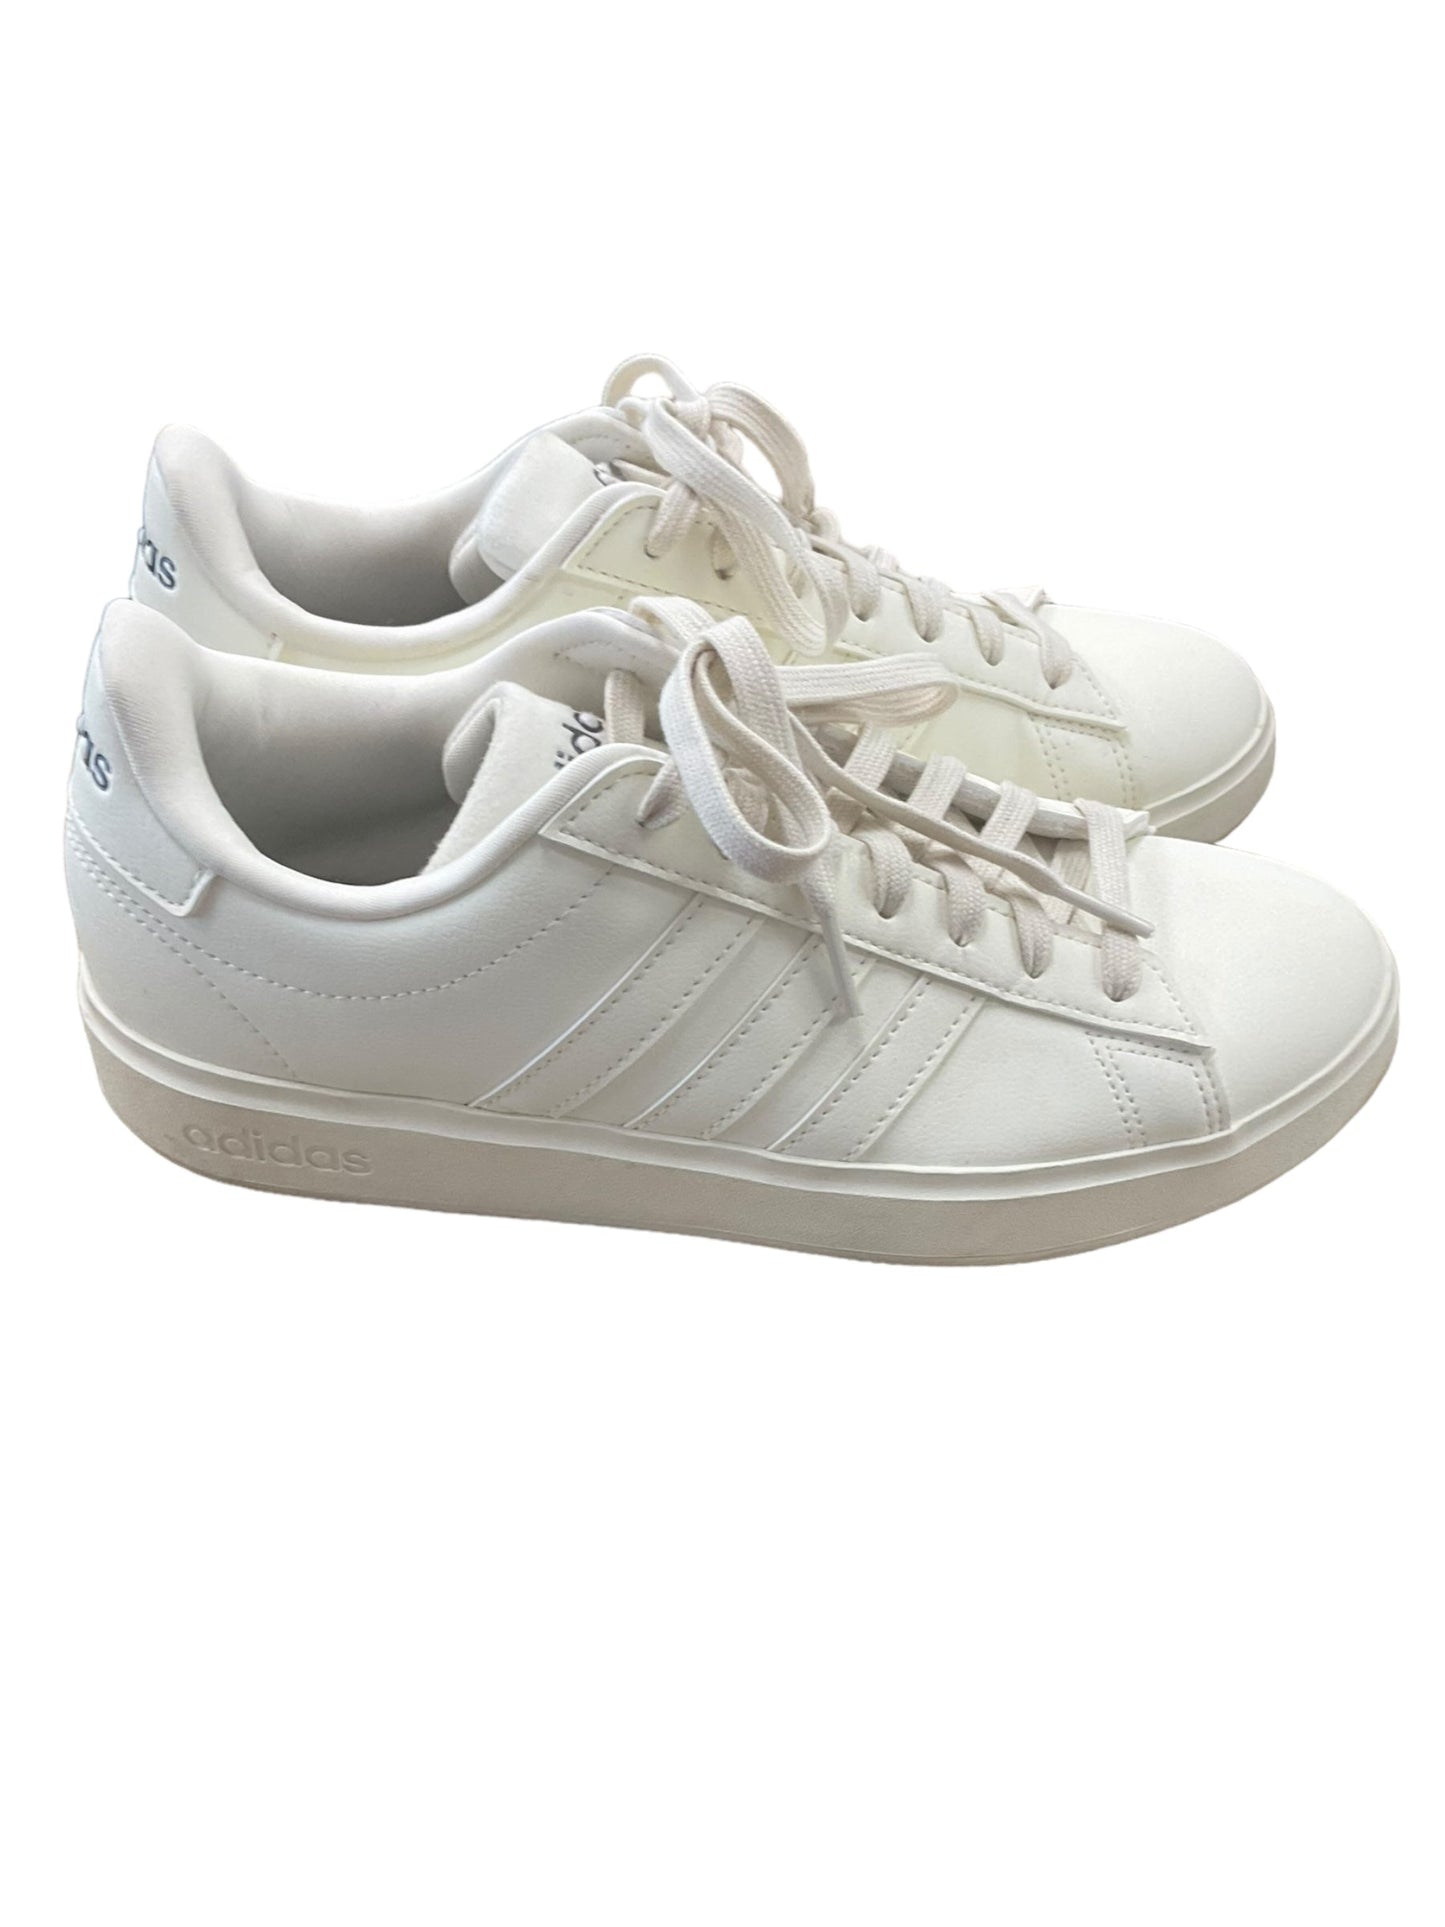 White Shoes Athletic Adidas, Size 7